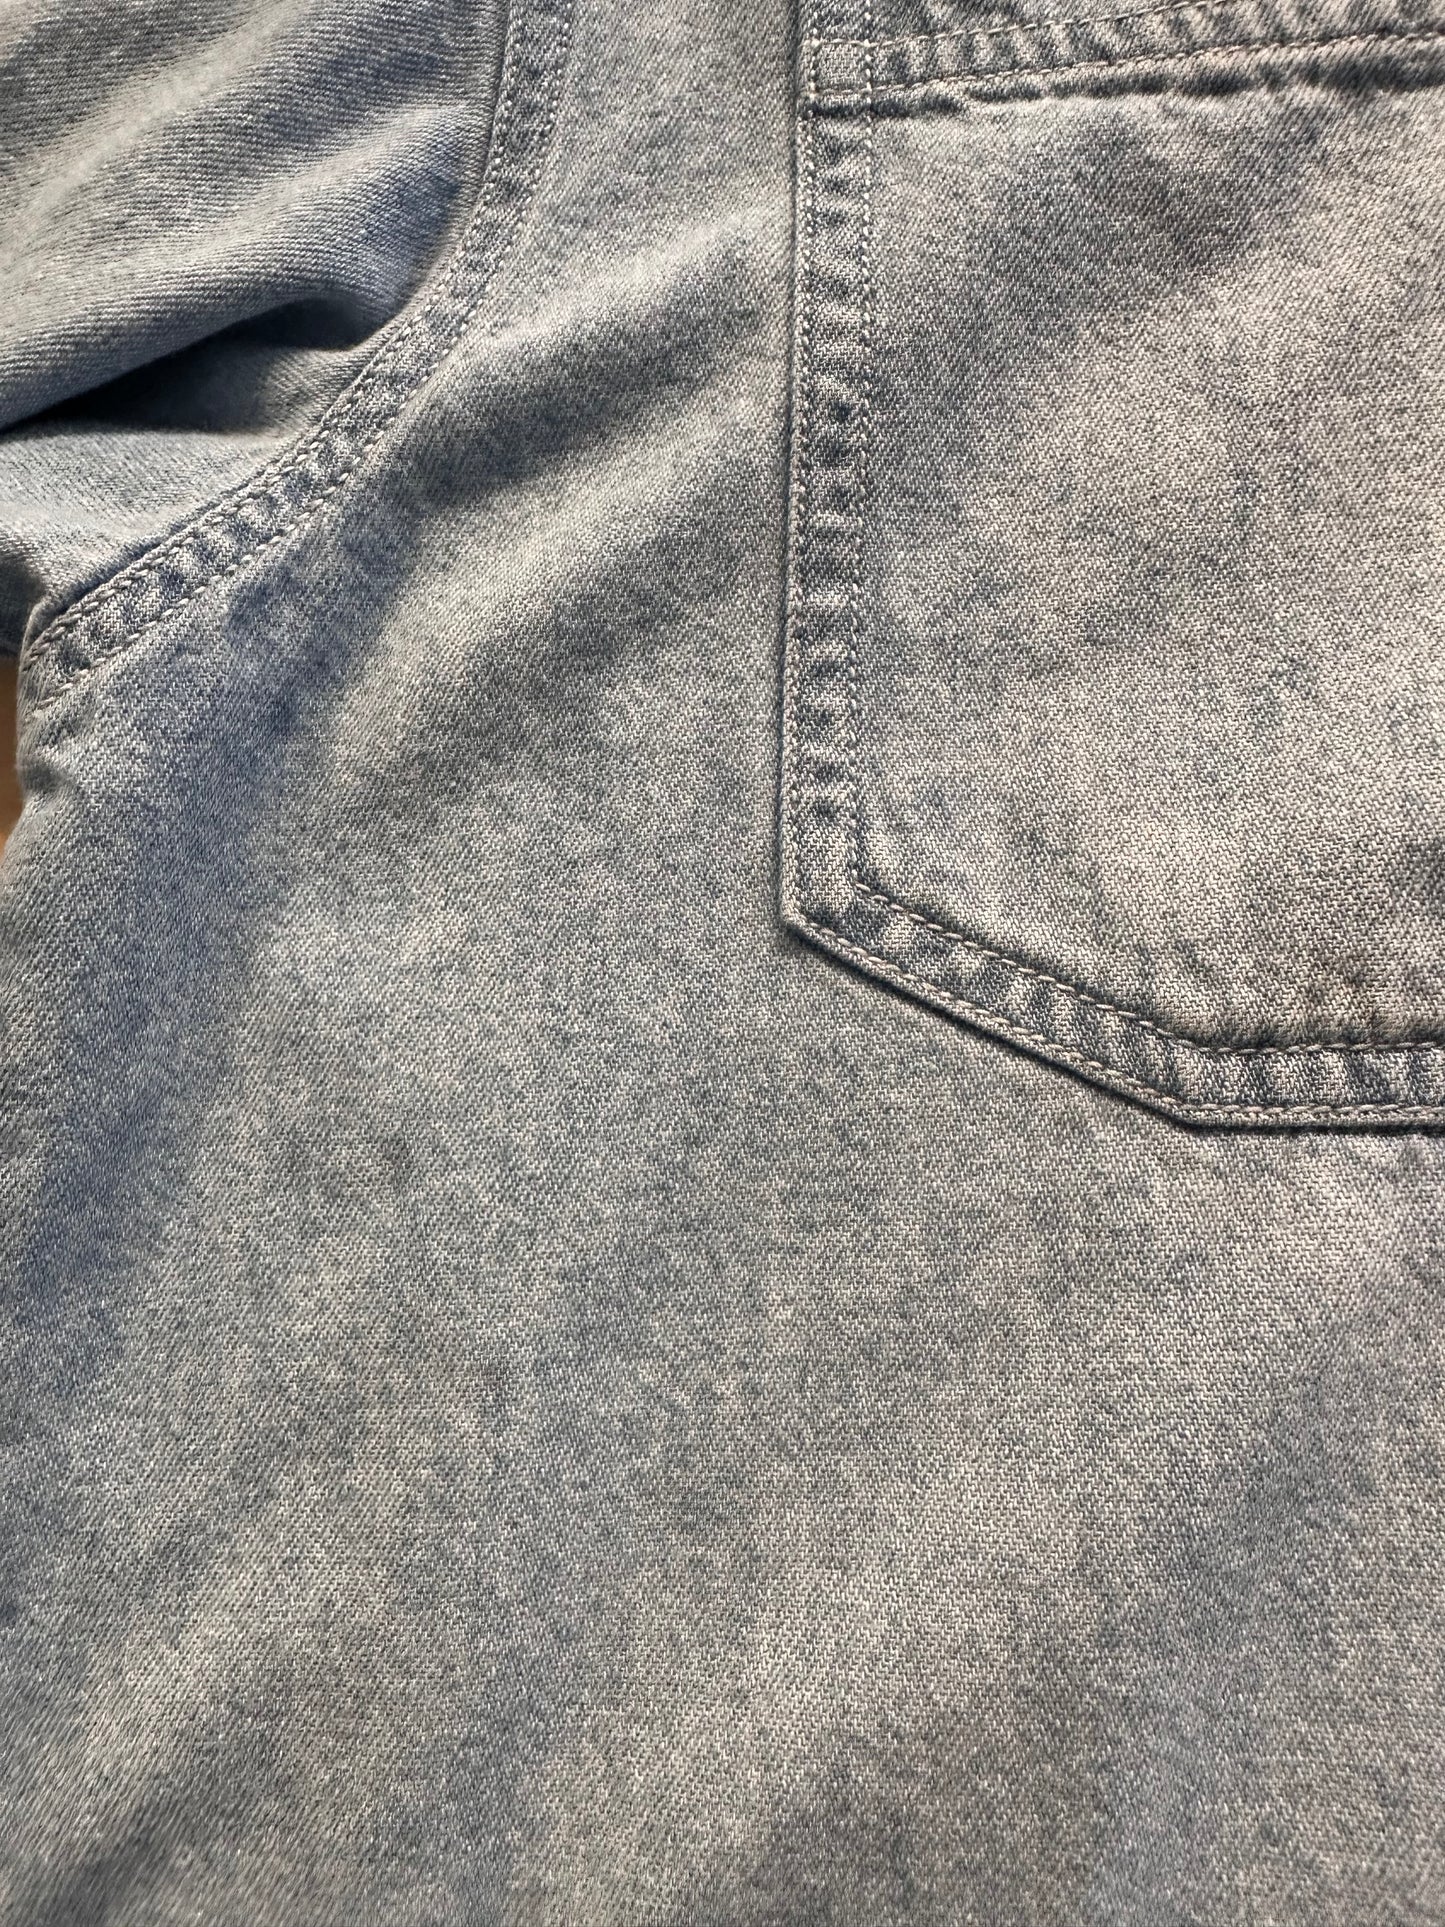 Vintage 'Levis' Button Up Denim Shirt / Large